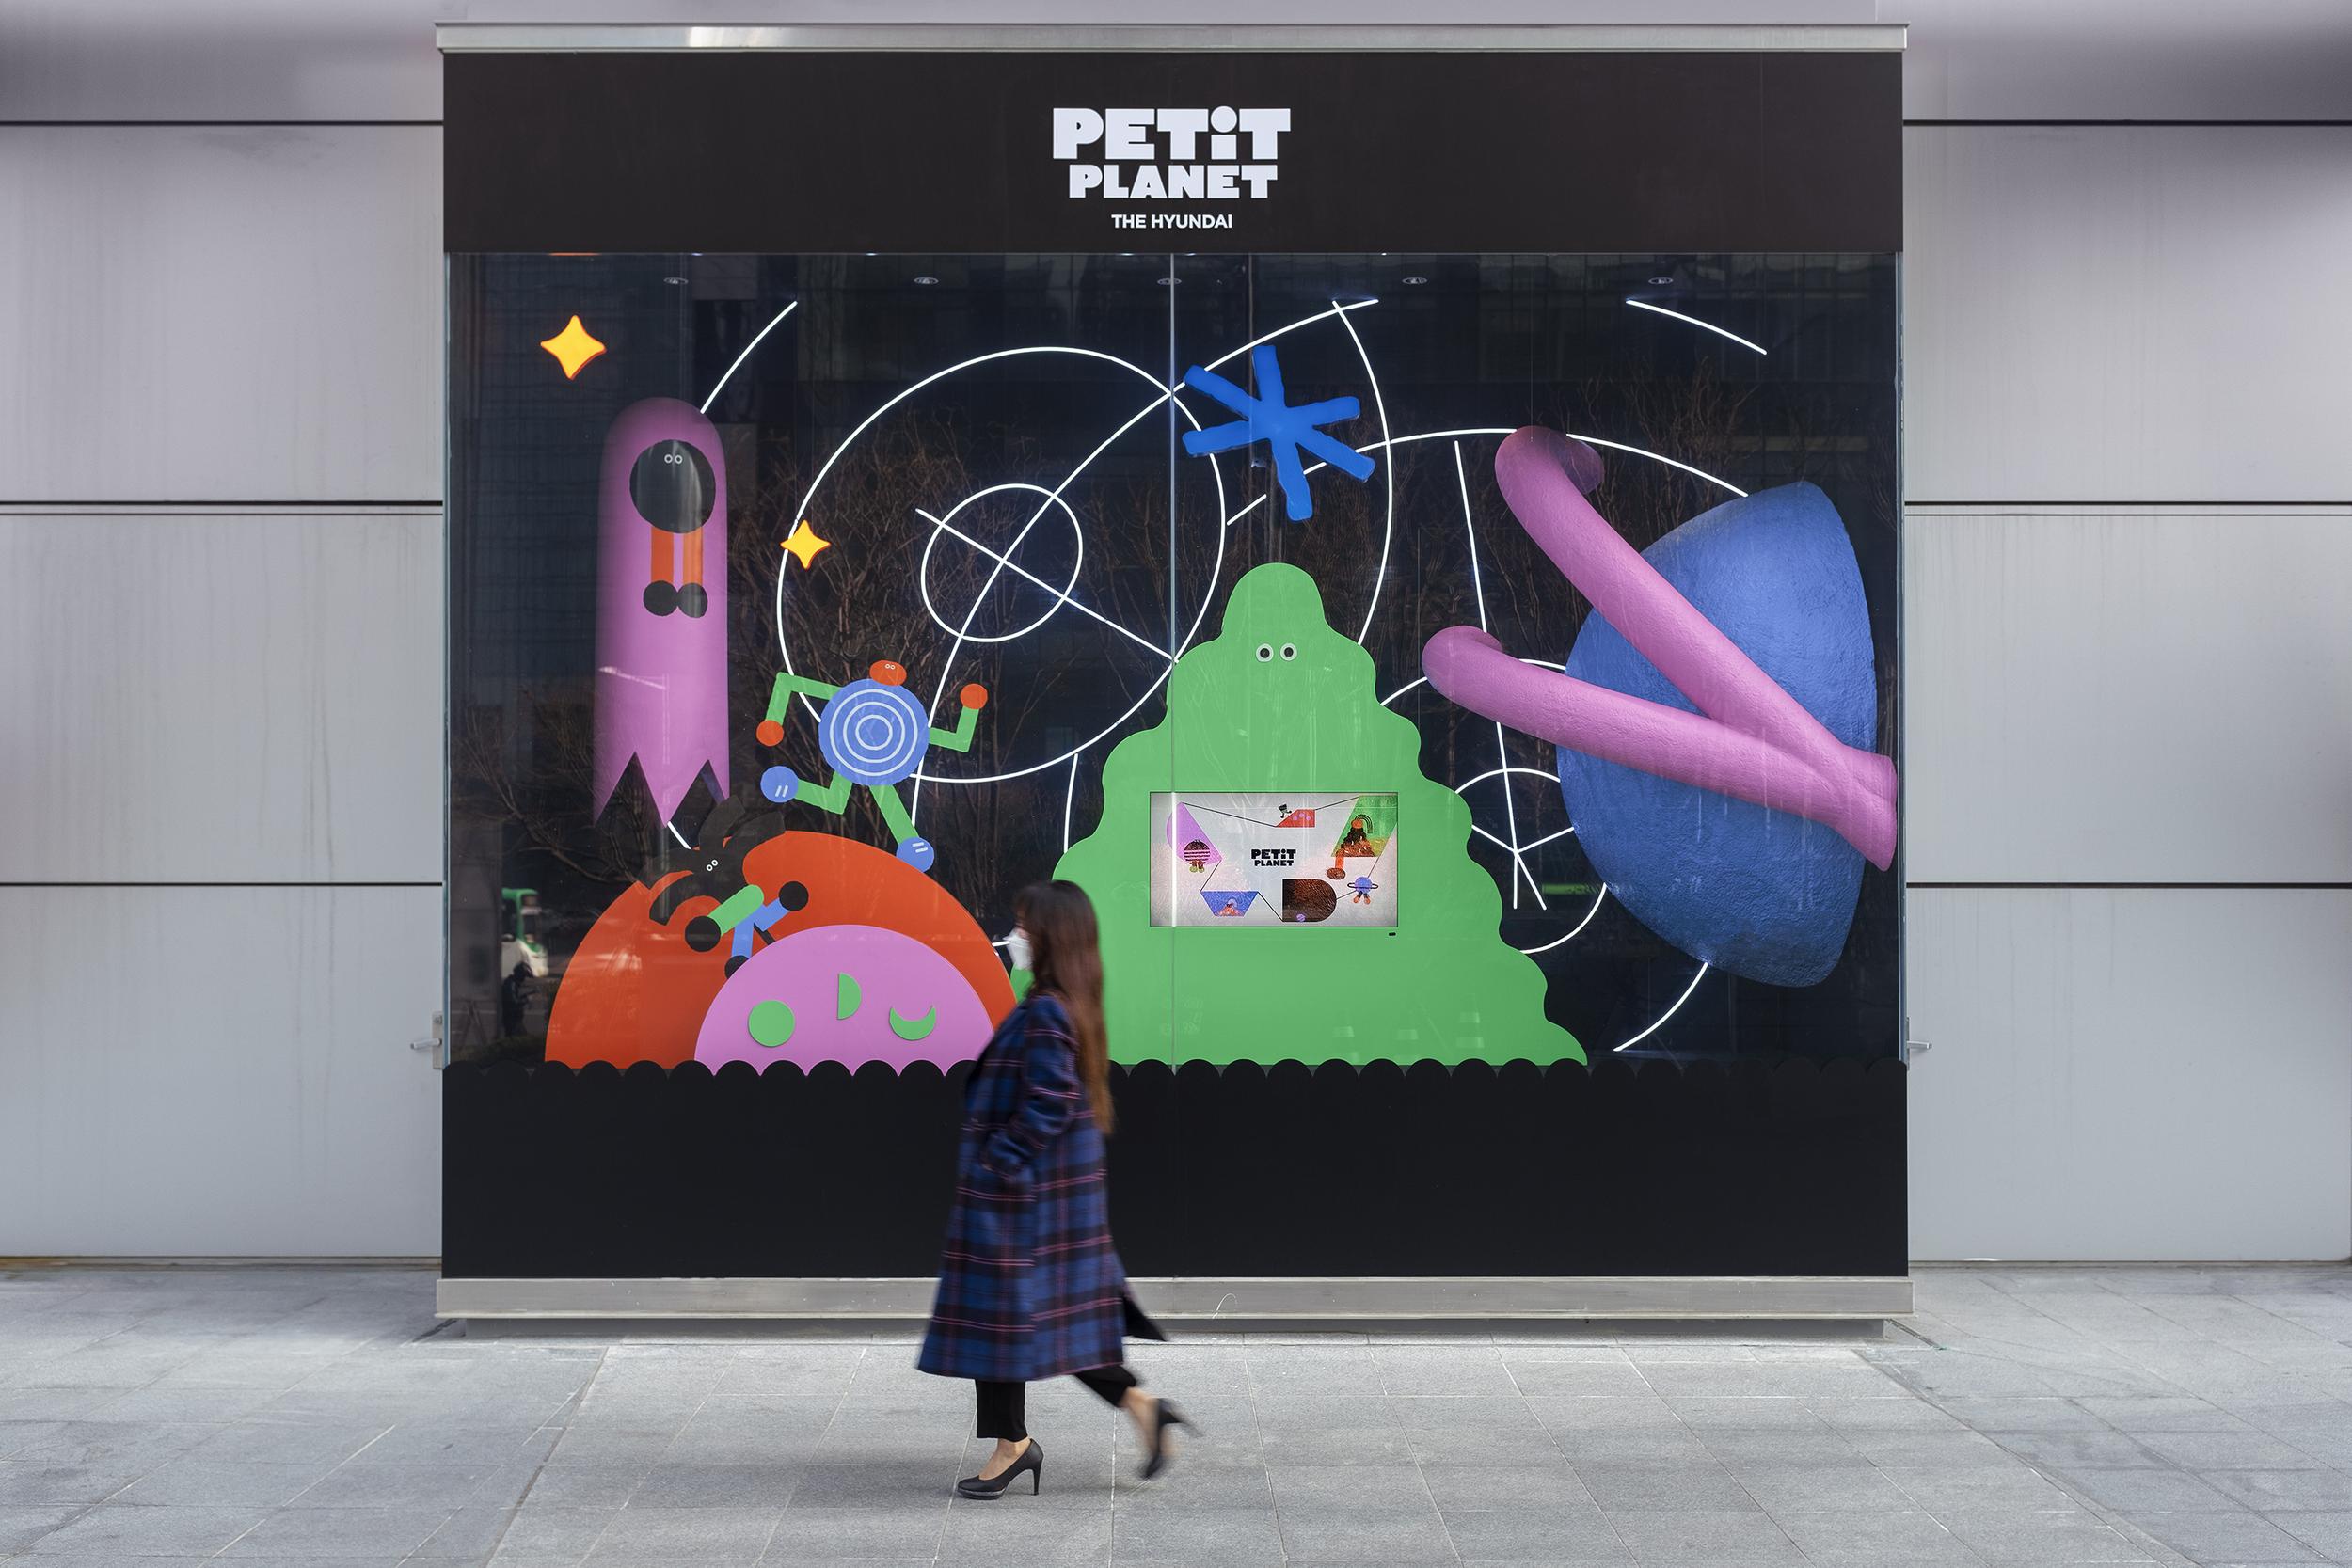 Identitas merek dan desain tampilan jendela untuk departemen mainan Petit Planet di department store Korea Selatan, Hyundai.  Dirancang oleh Studio fnt.